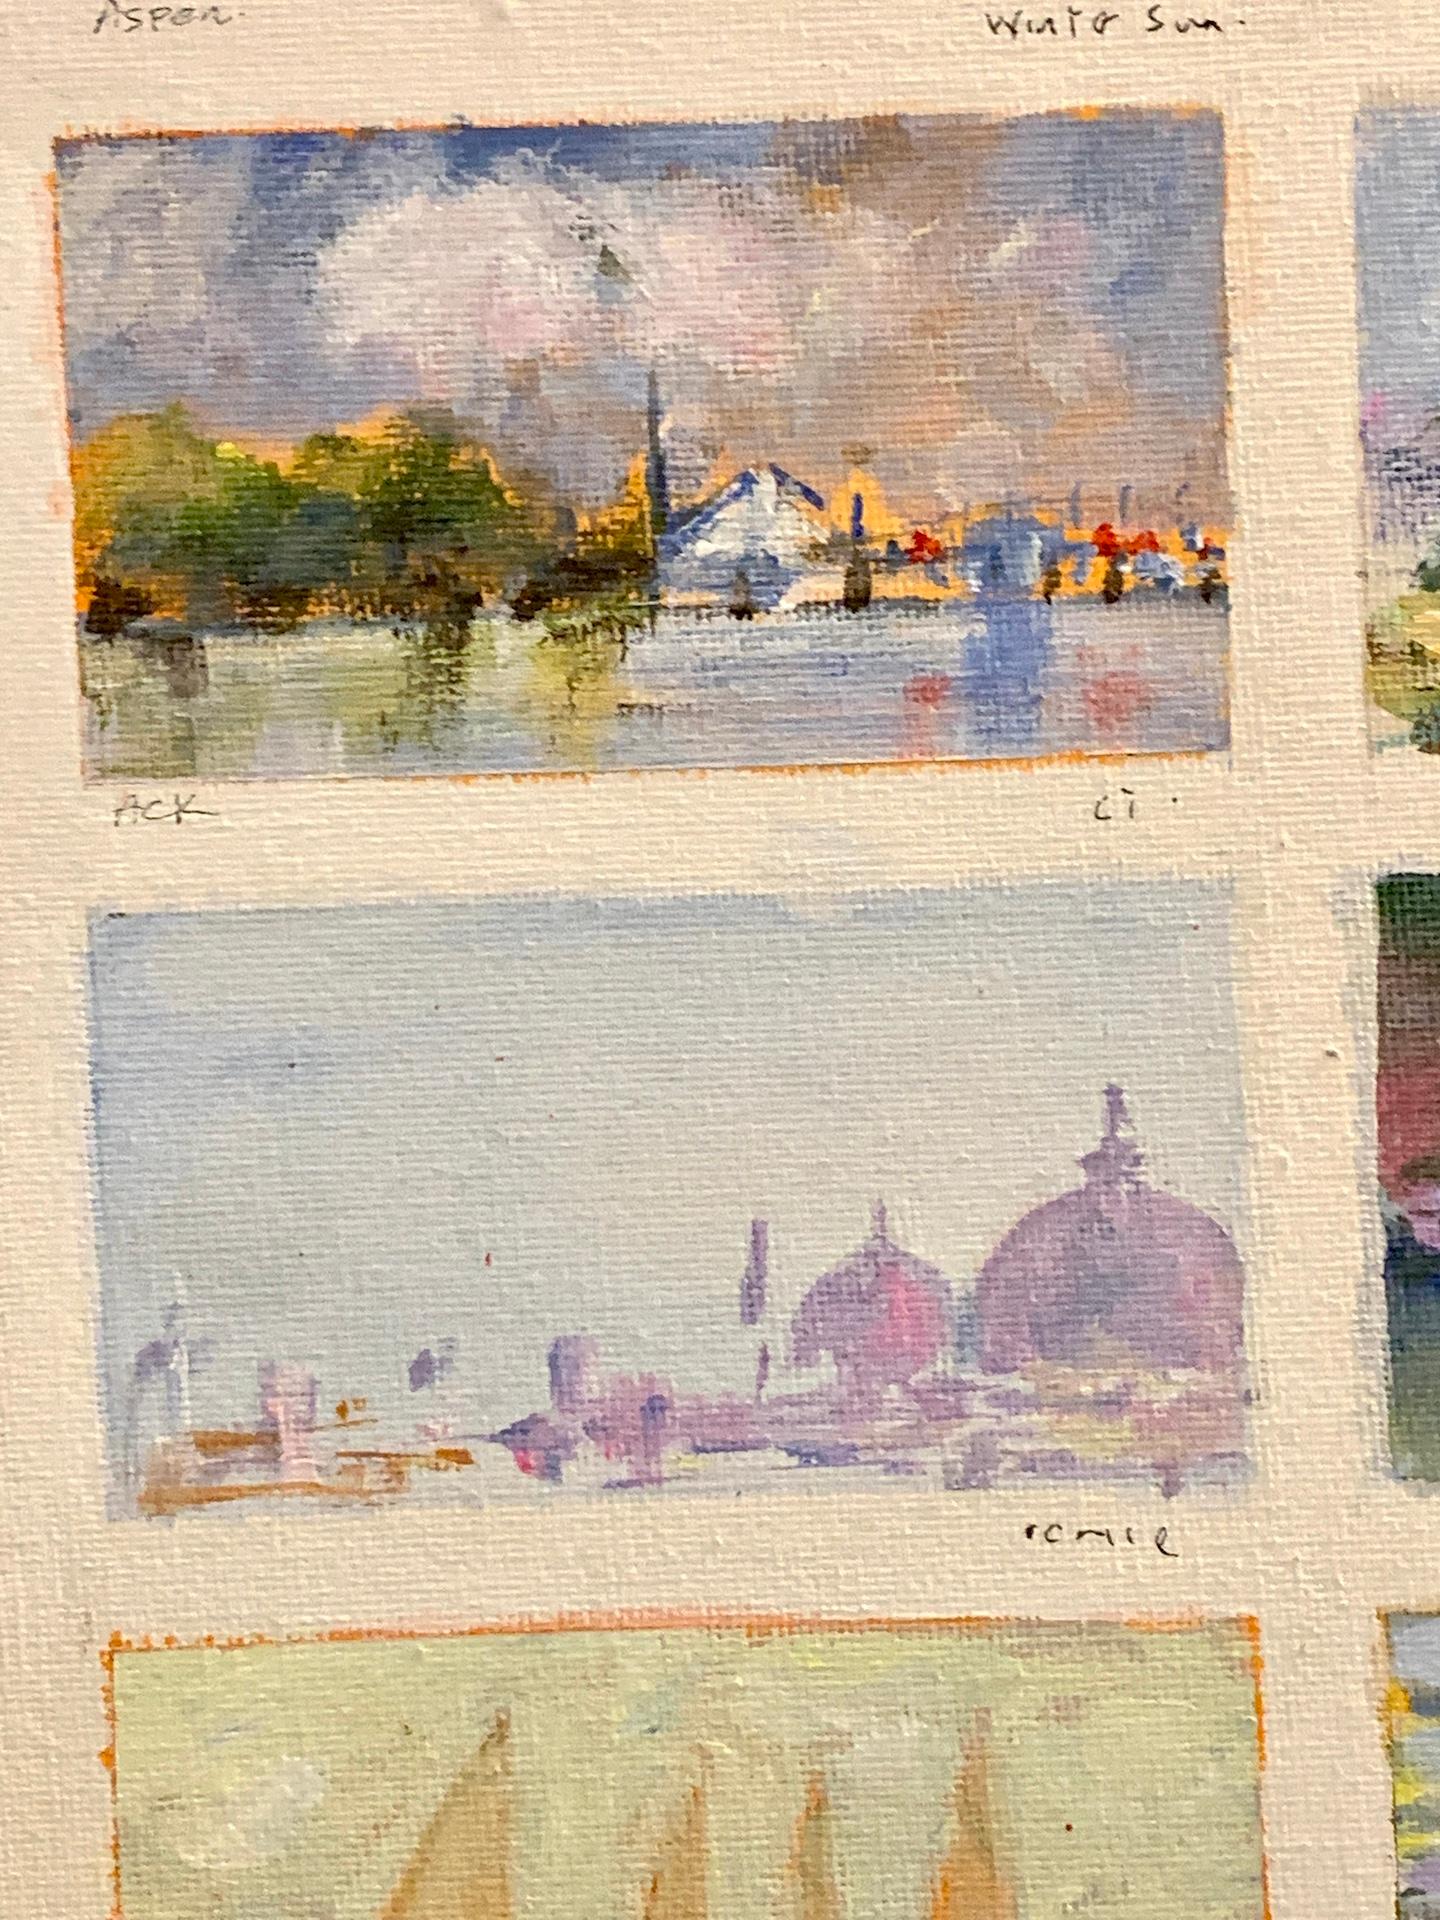 Croquis impressionniste américain d'un groupe de paysages et de points de repère.

Il s'agit notamment de Sconset à Nantucket, de Venise, en Italie, de Norfolk, au Royaume-Uni, d'Aspen, dans le Colorado, etc

Charles Bertie Hall a peint des scènes